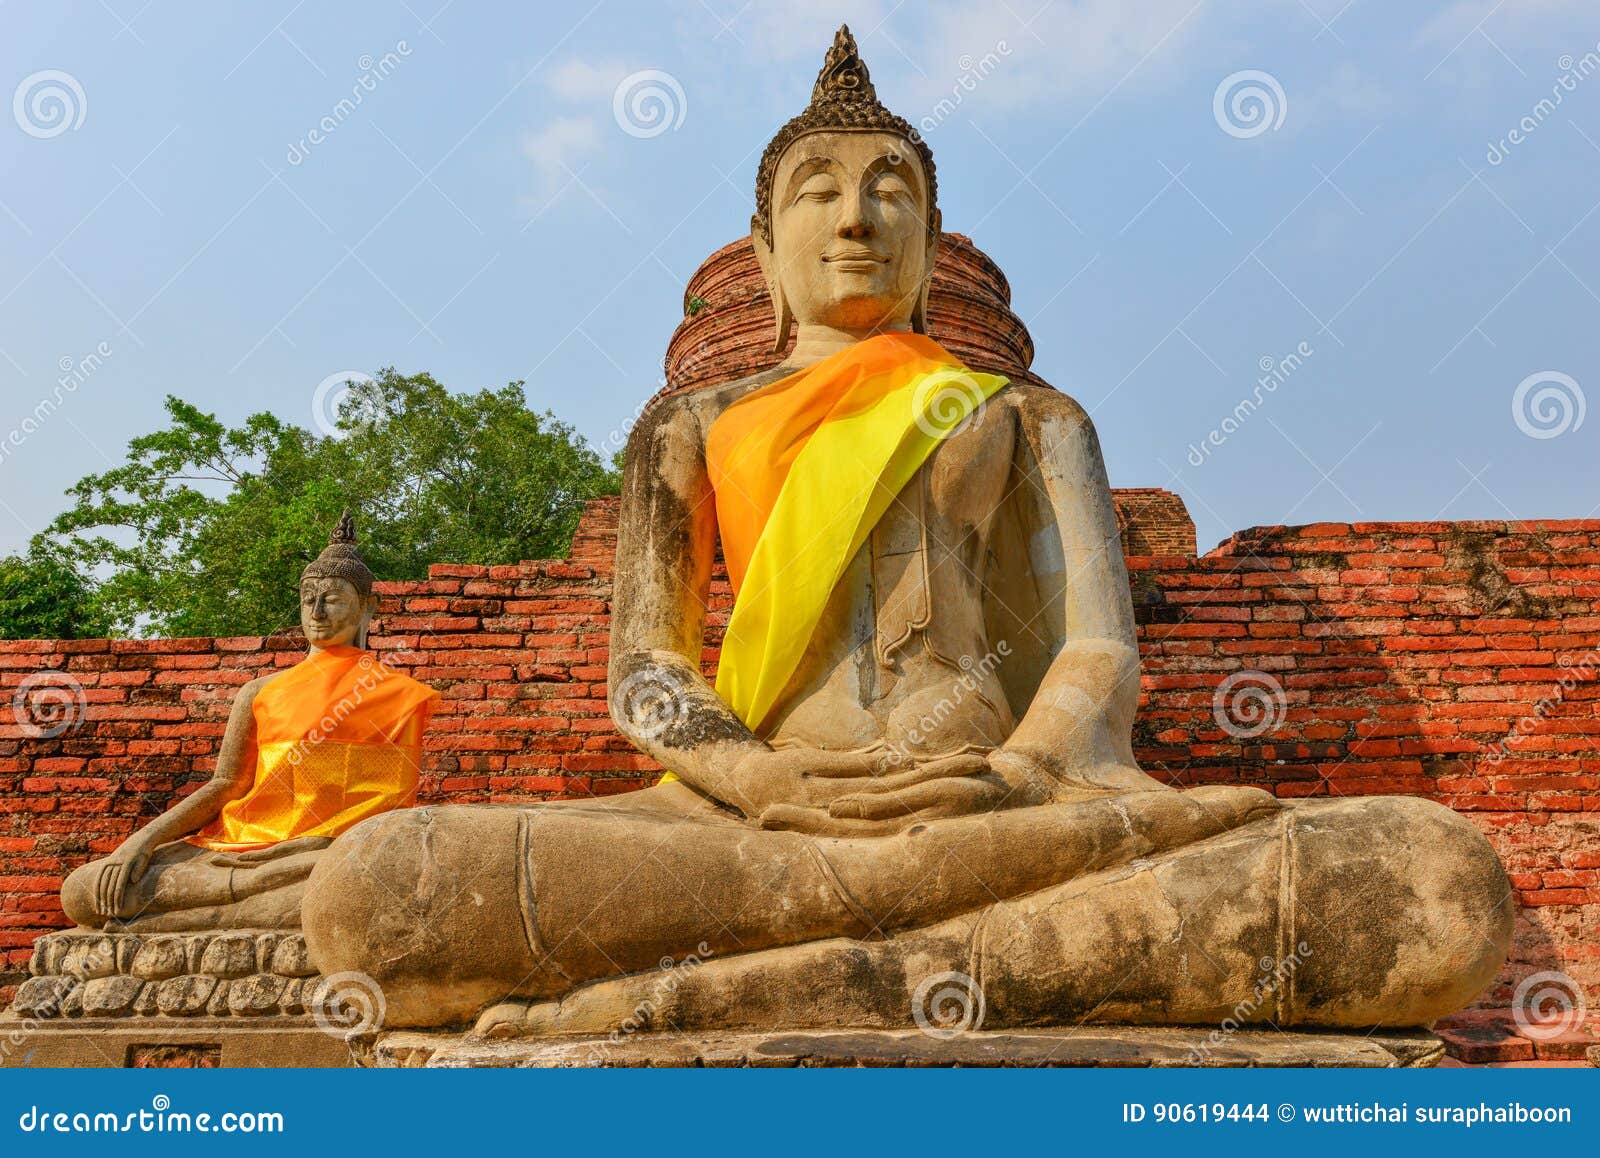 Buda se sienta a piernas cruzadas. Meditando la meditación de la naturaleza de Buda, Buda sentó verticalmente su cuerpo que se apila el pie ambos